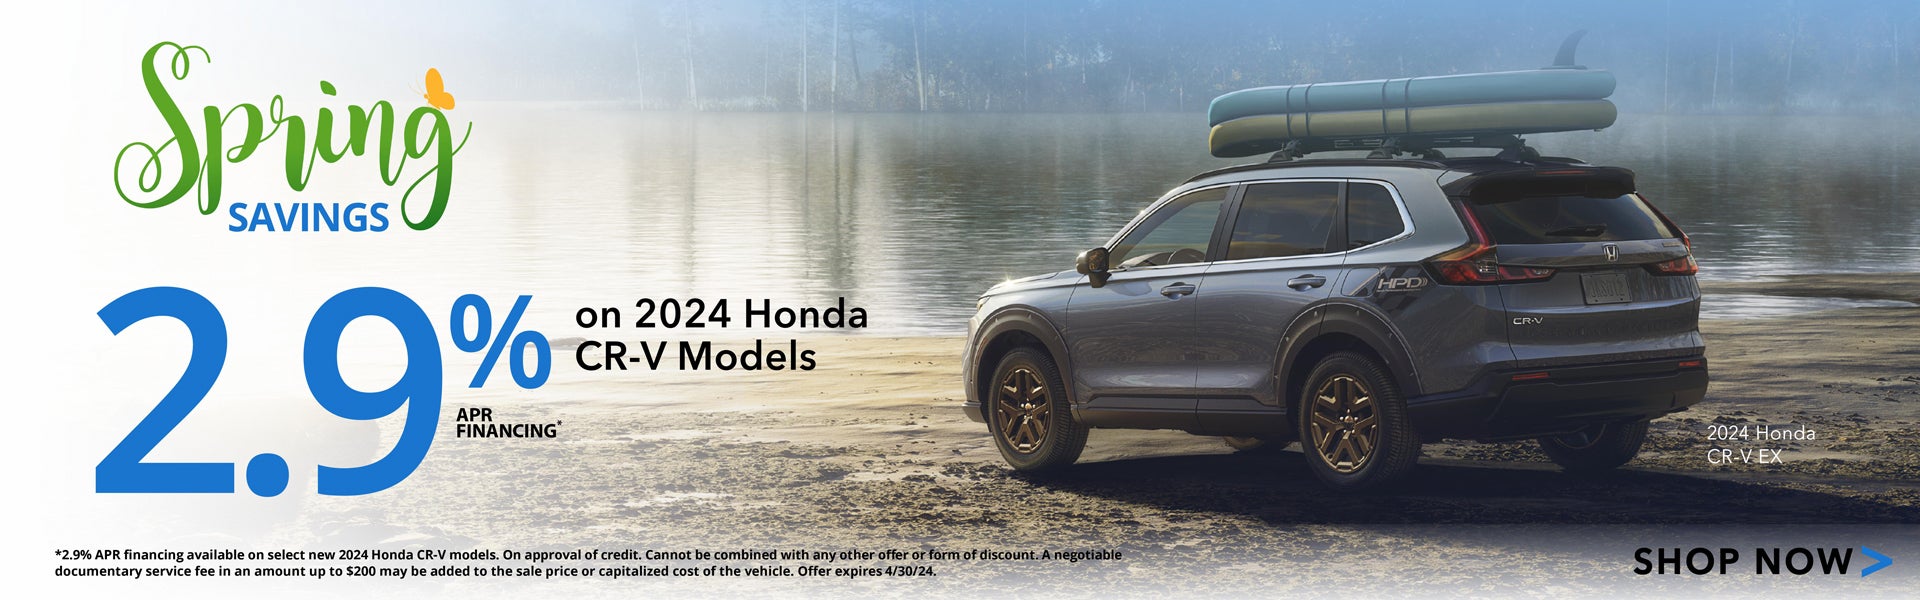 2.9% on 2024 Honda CR-V Models